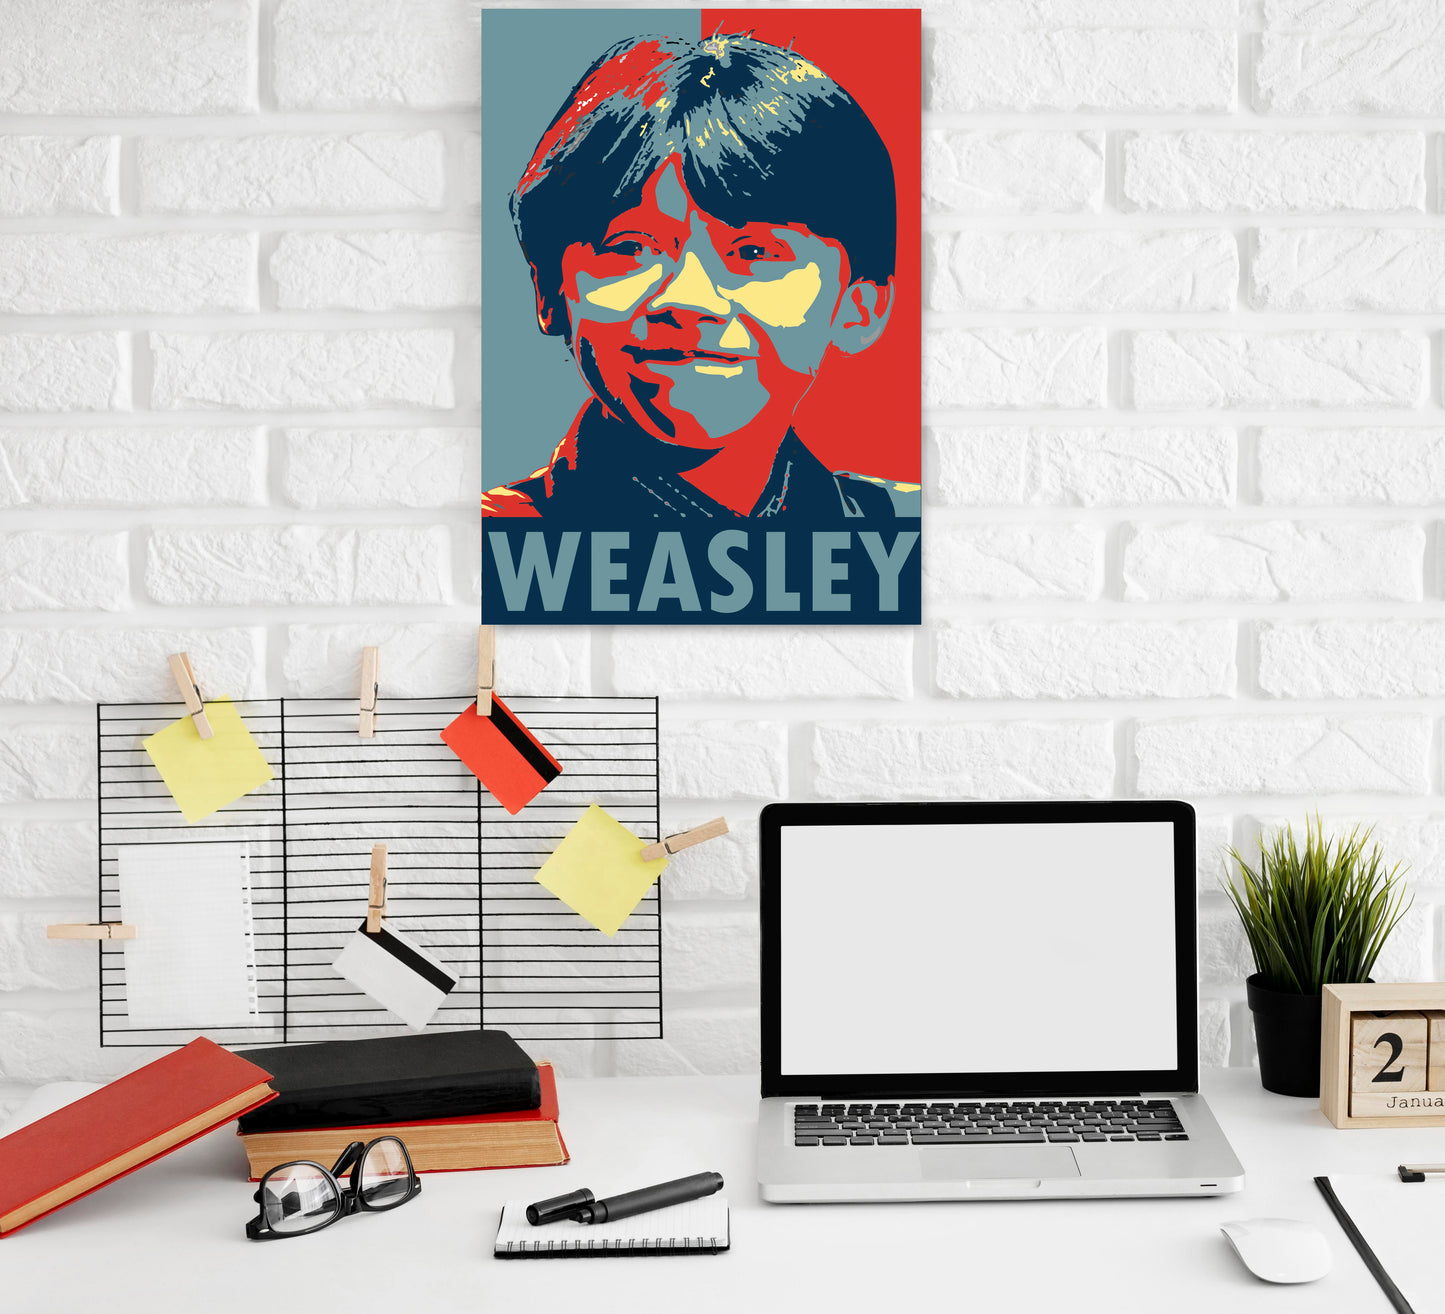 Weasley Art work